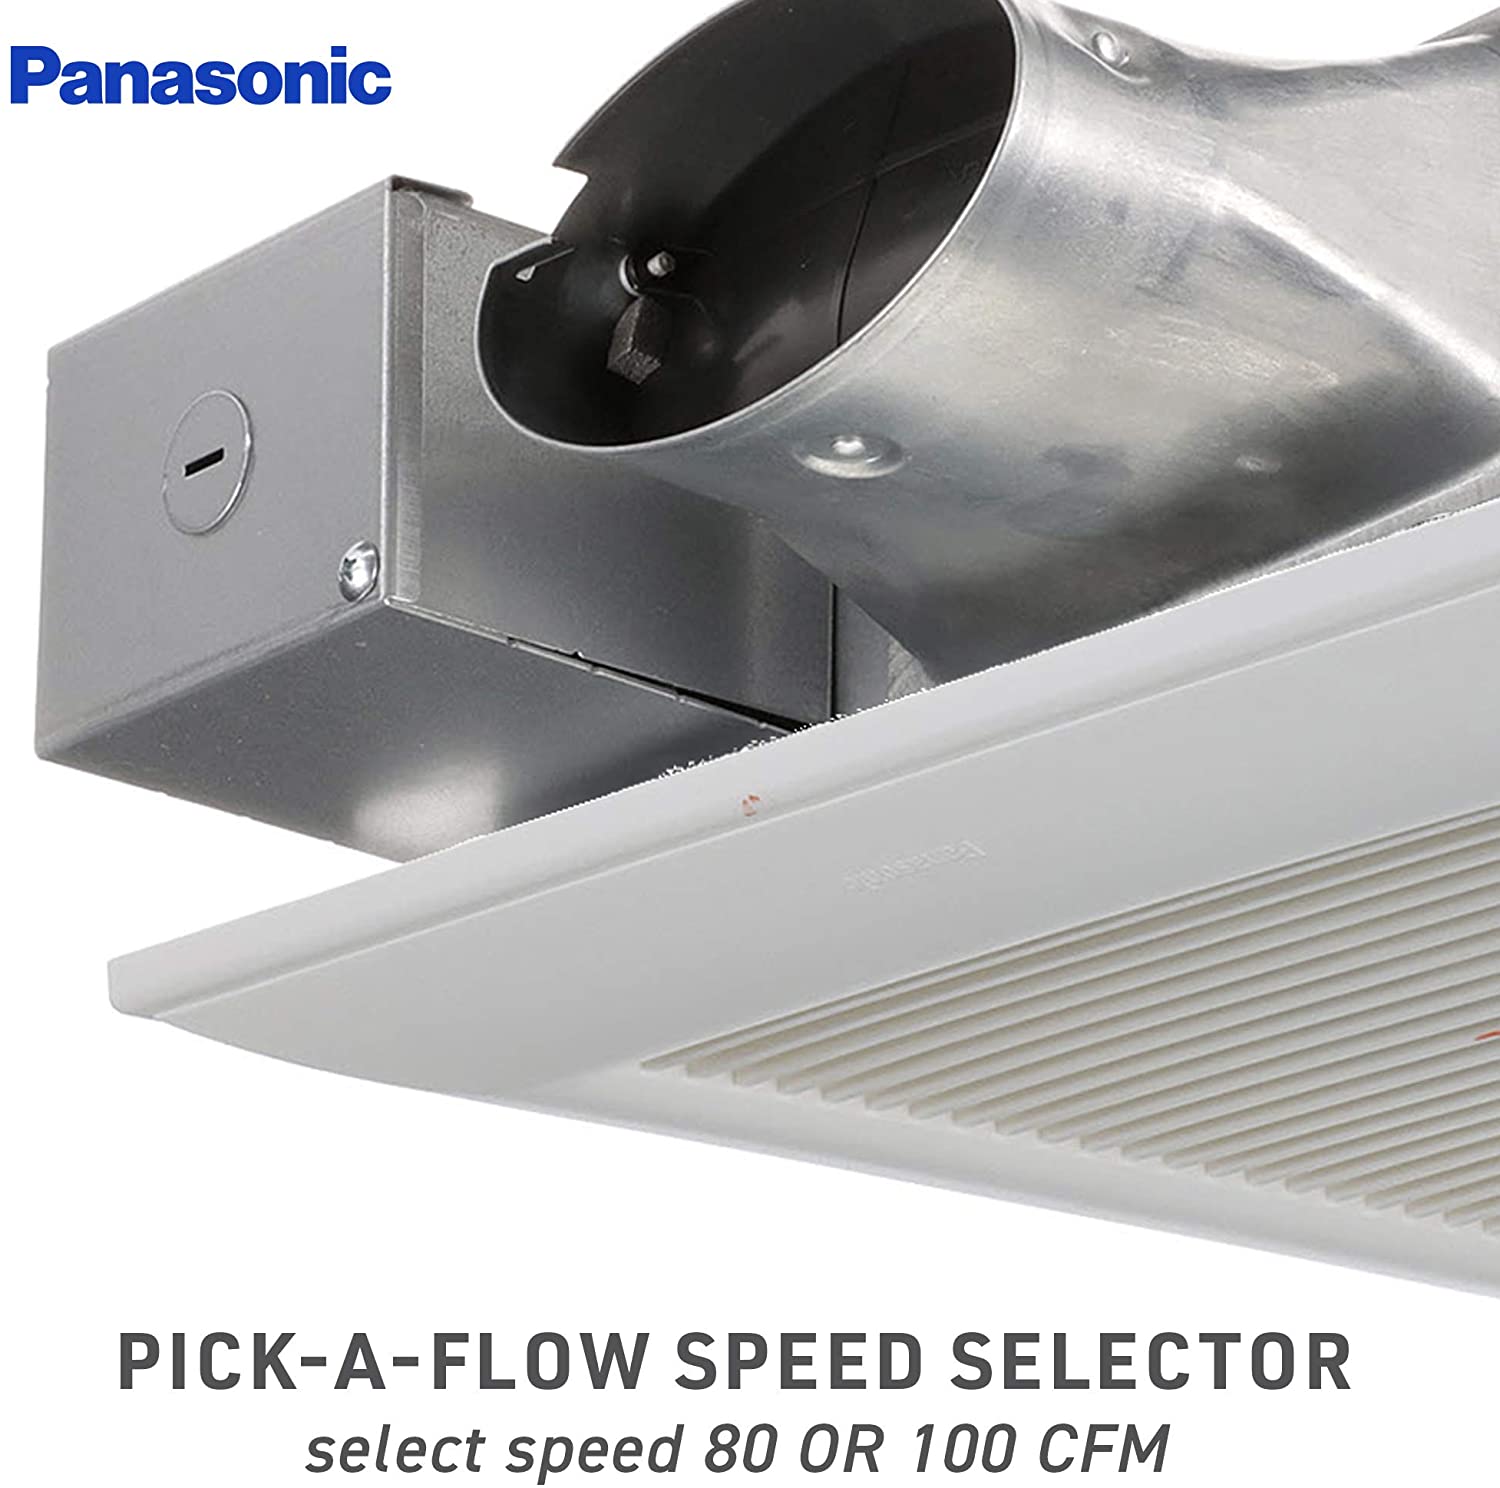 Review of Panasonic FV-0810VSS1 WhisperValue DC Ventilation Fan, 80 or 100 CFM